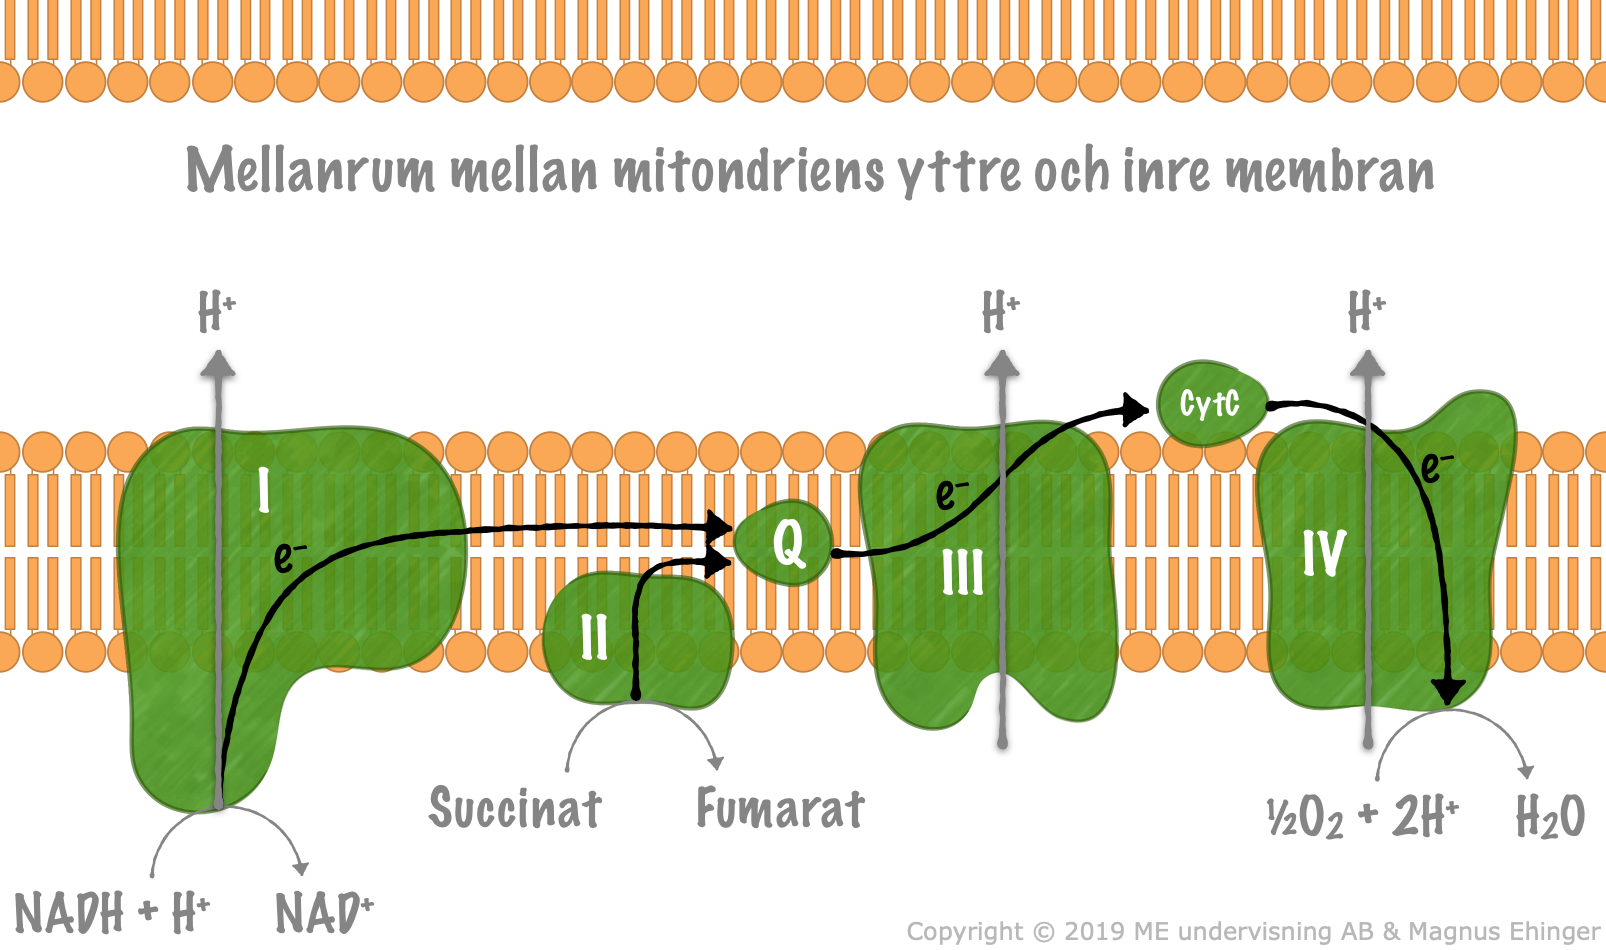 I elektrontransportkedjan utnyttjas energin hos elektronerna från NADH + H+ till att pumpa vätejoner ut till mellanrummet mellan mitokondriens inre och yttre membran.